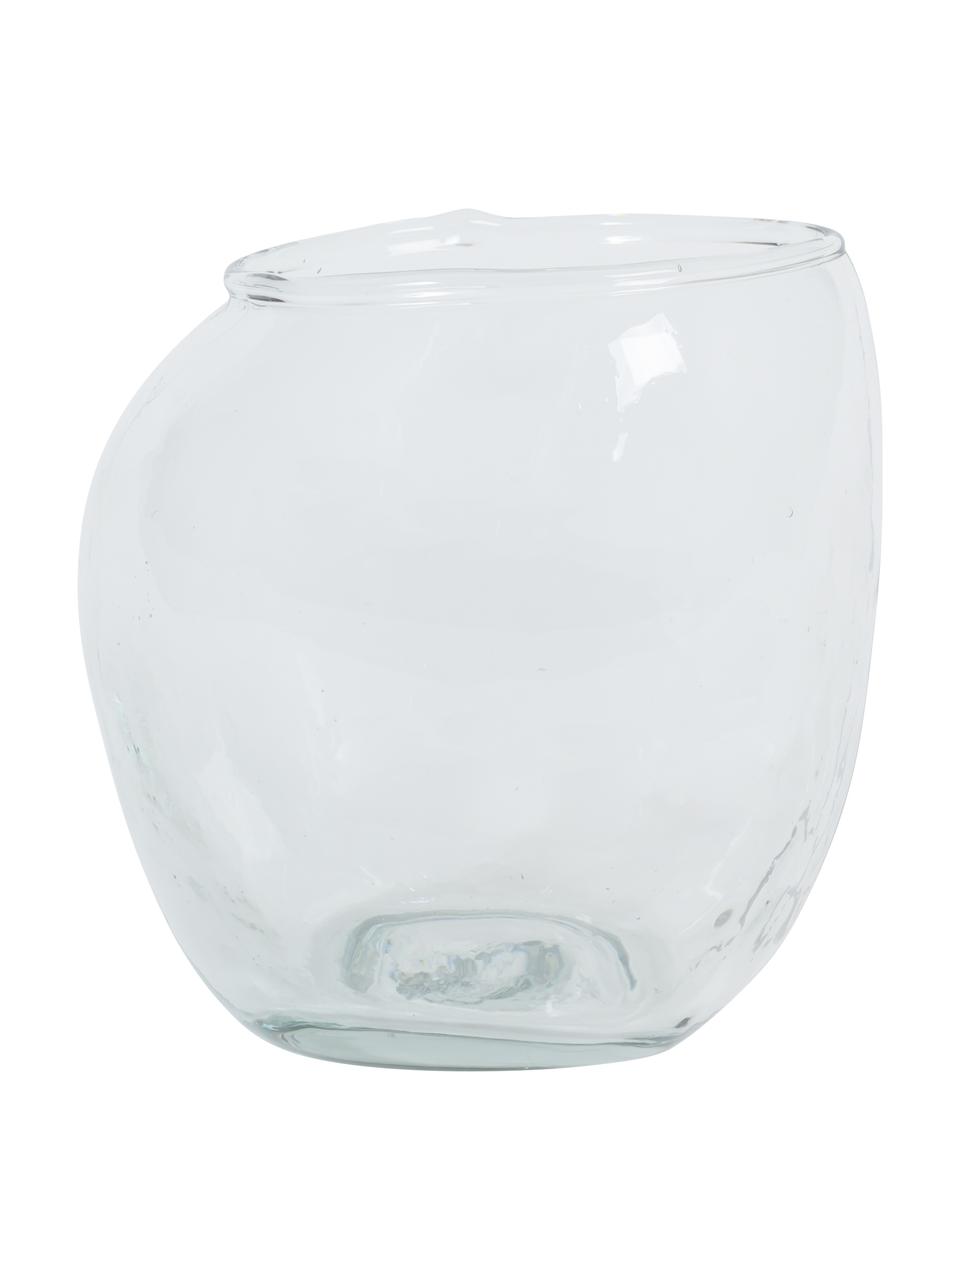 Bicchiere acqua in vetro riciclato Unexpected 4 pz, Vetro riciclato, Trasparente, Ø 8 x Alt. 11 cm